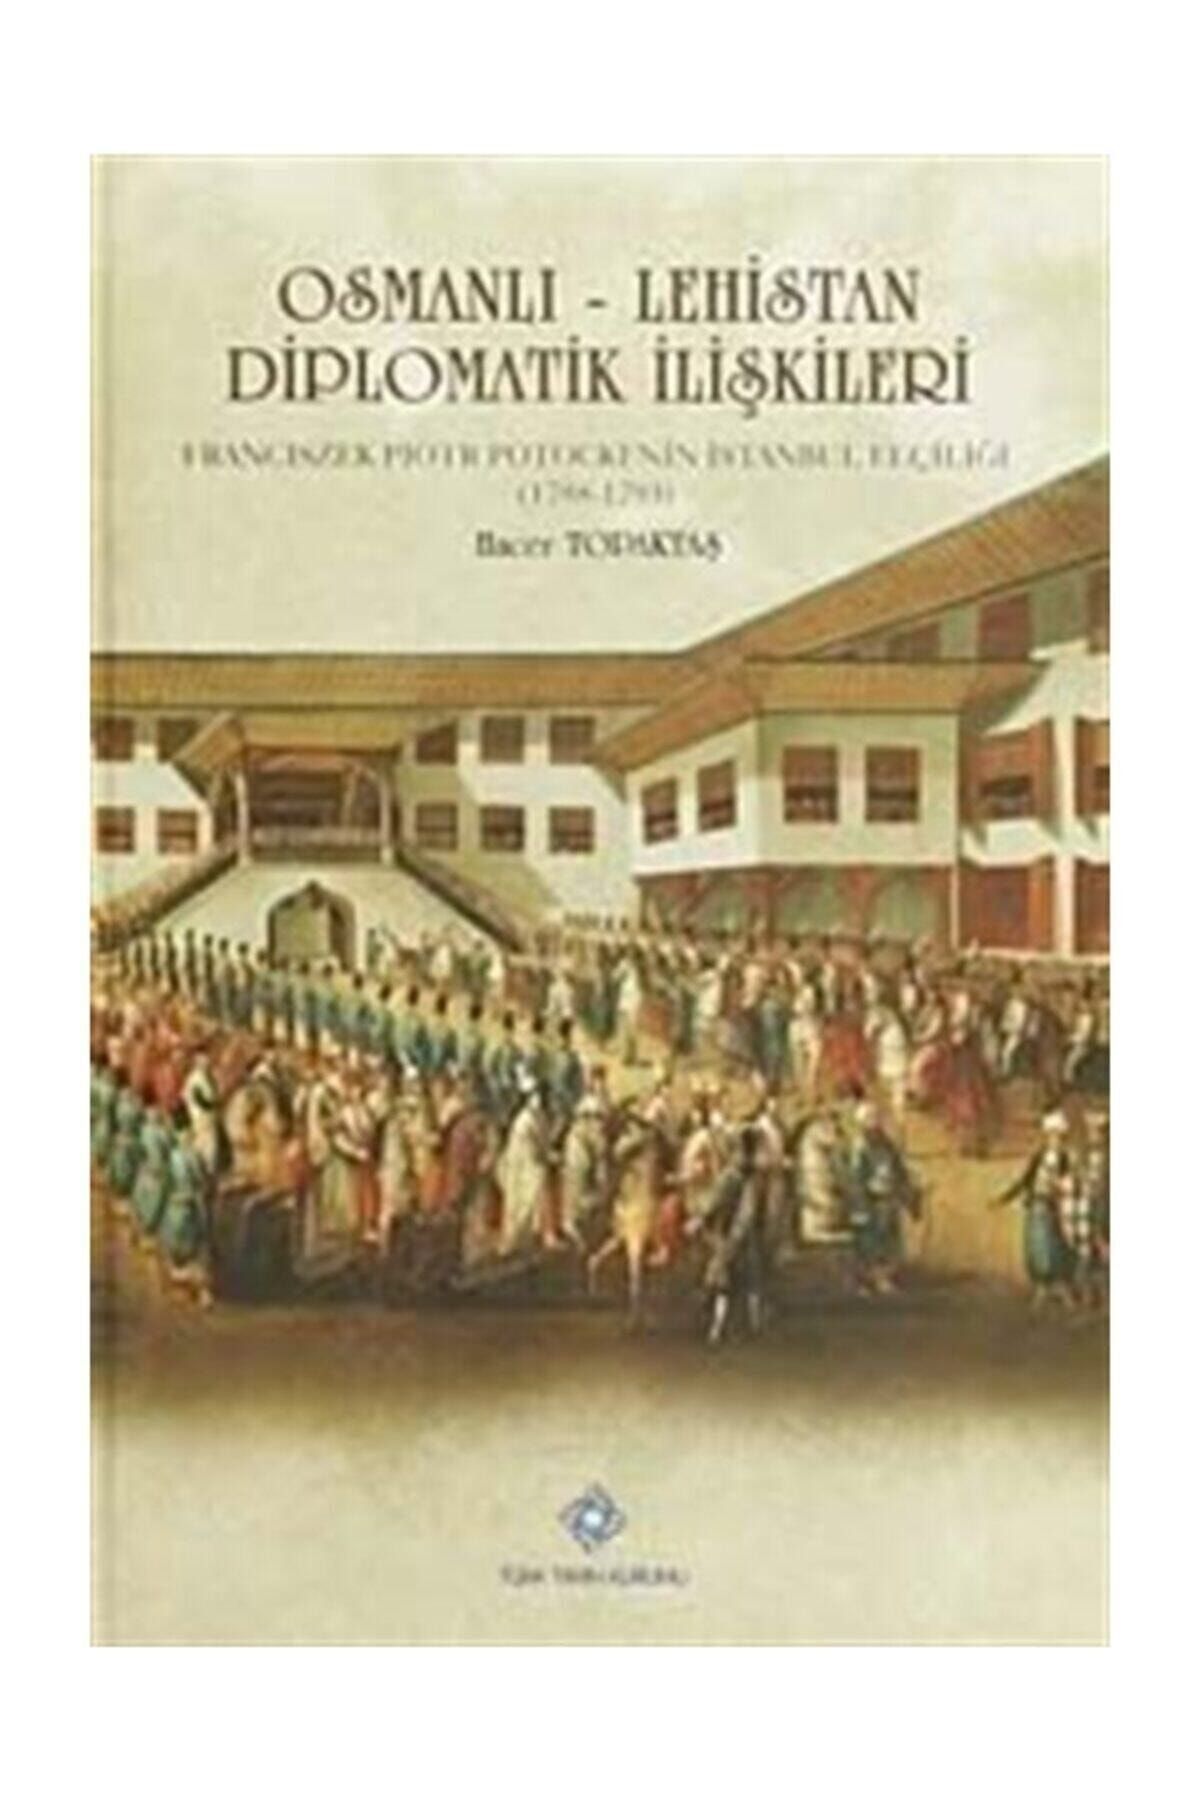 Türk Tarih Kurumu Yayınları Osmanlı-lehistan Diplomatik Ilişkileri